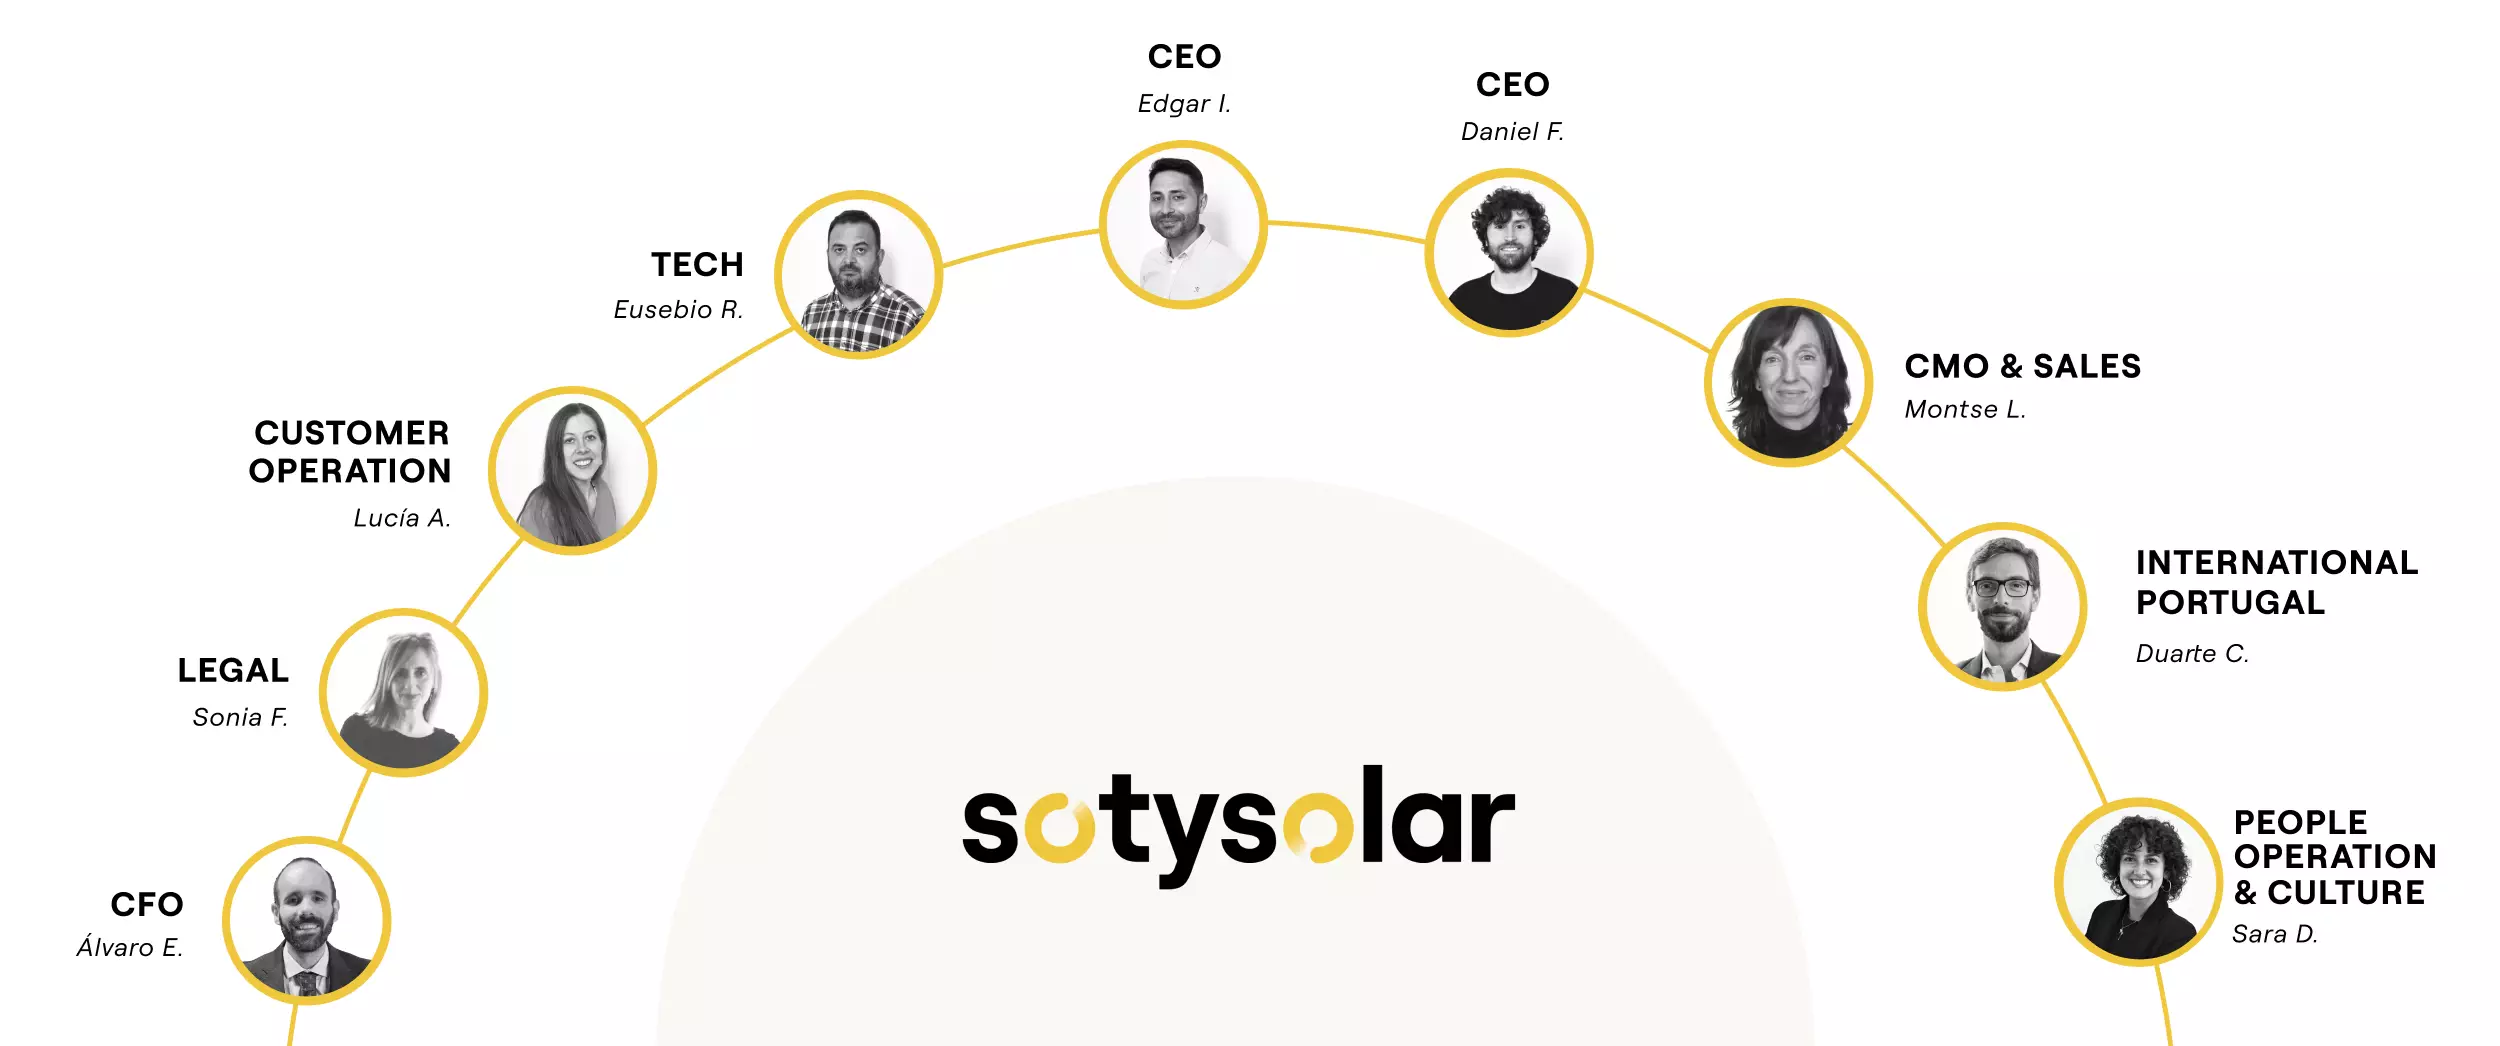 Organigrama del equipo directivo de SotySolar con las fotos y nombres de los responsables de cada departamento